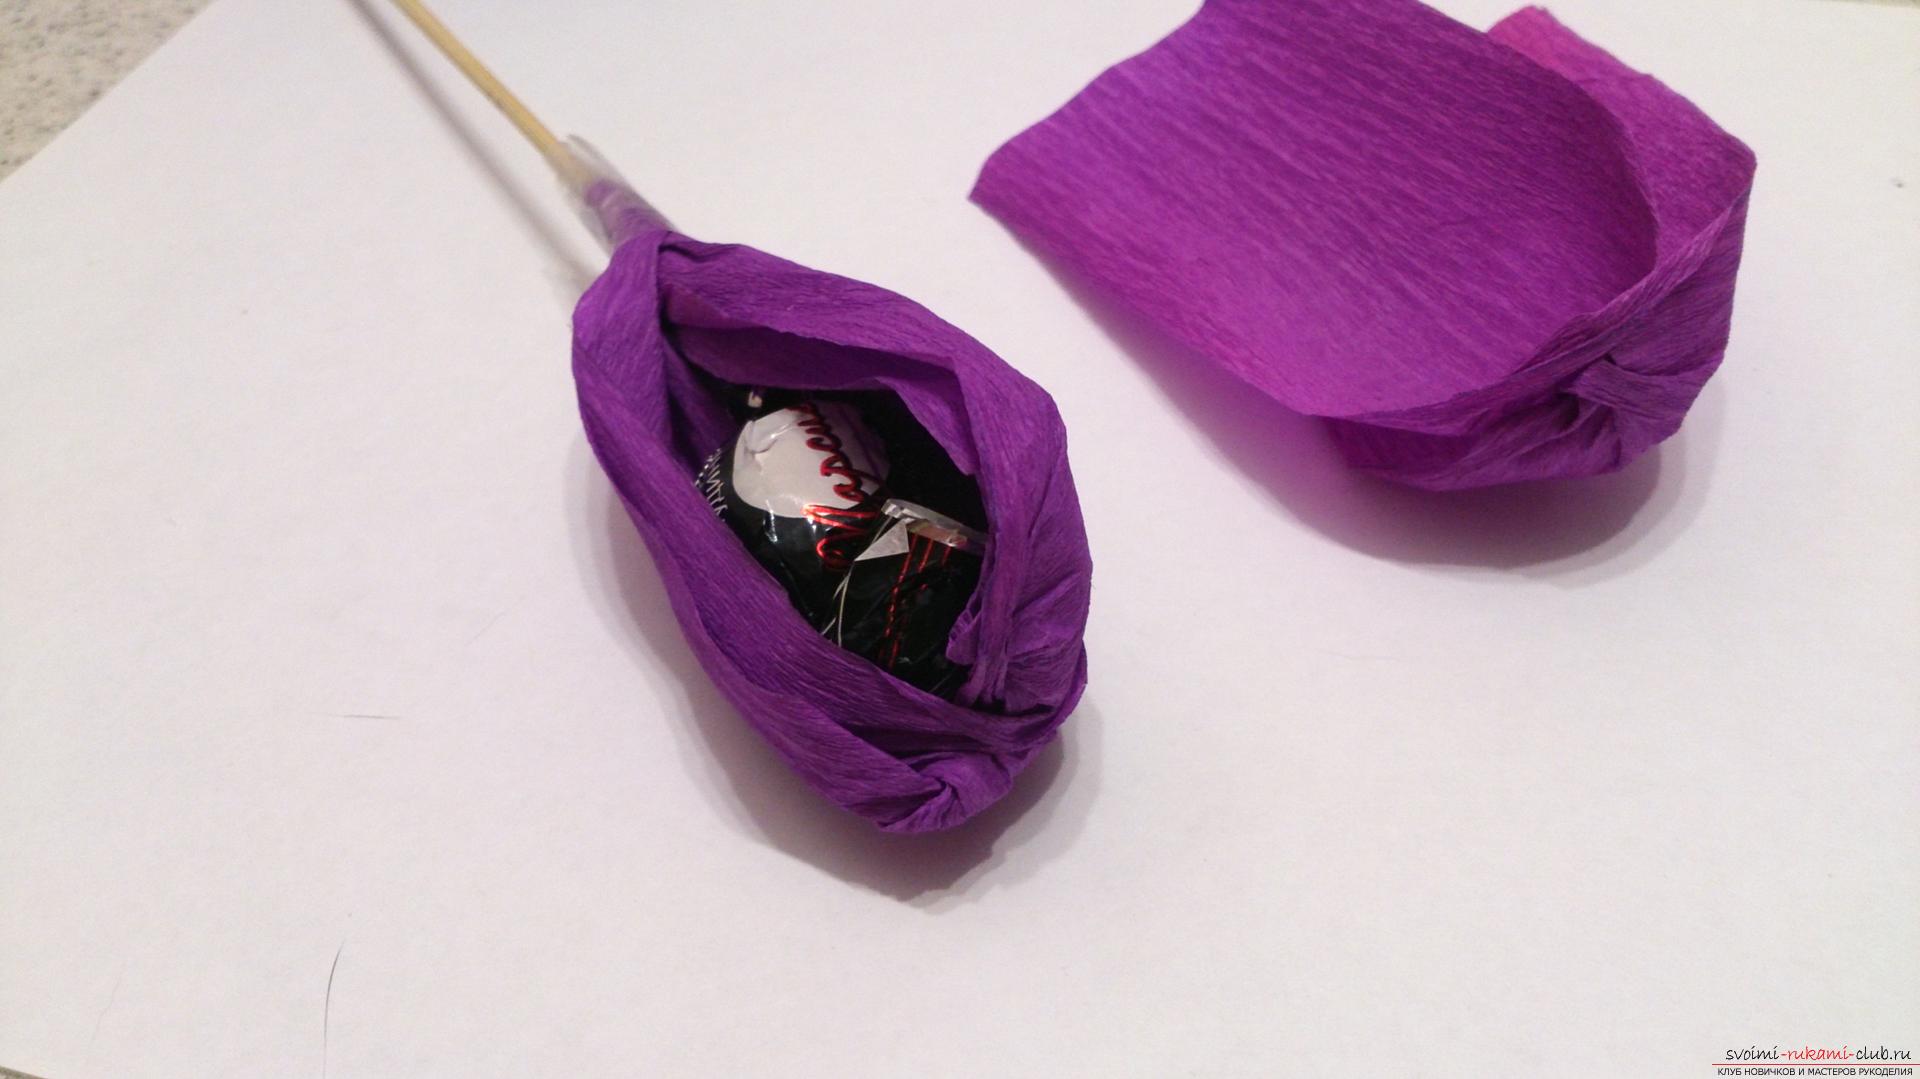 Мастер-класс научит как изготовить цветы из бумаги своими руками и составить из них букеты из конфет.. Фото №12